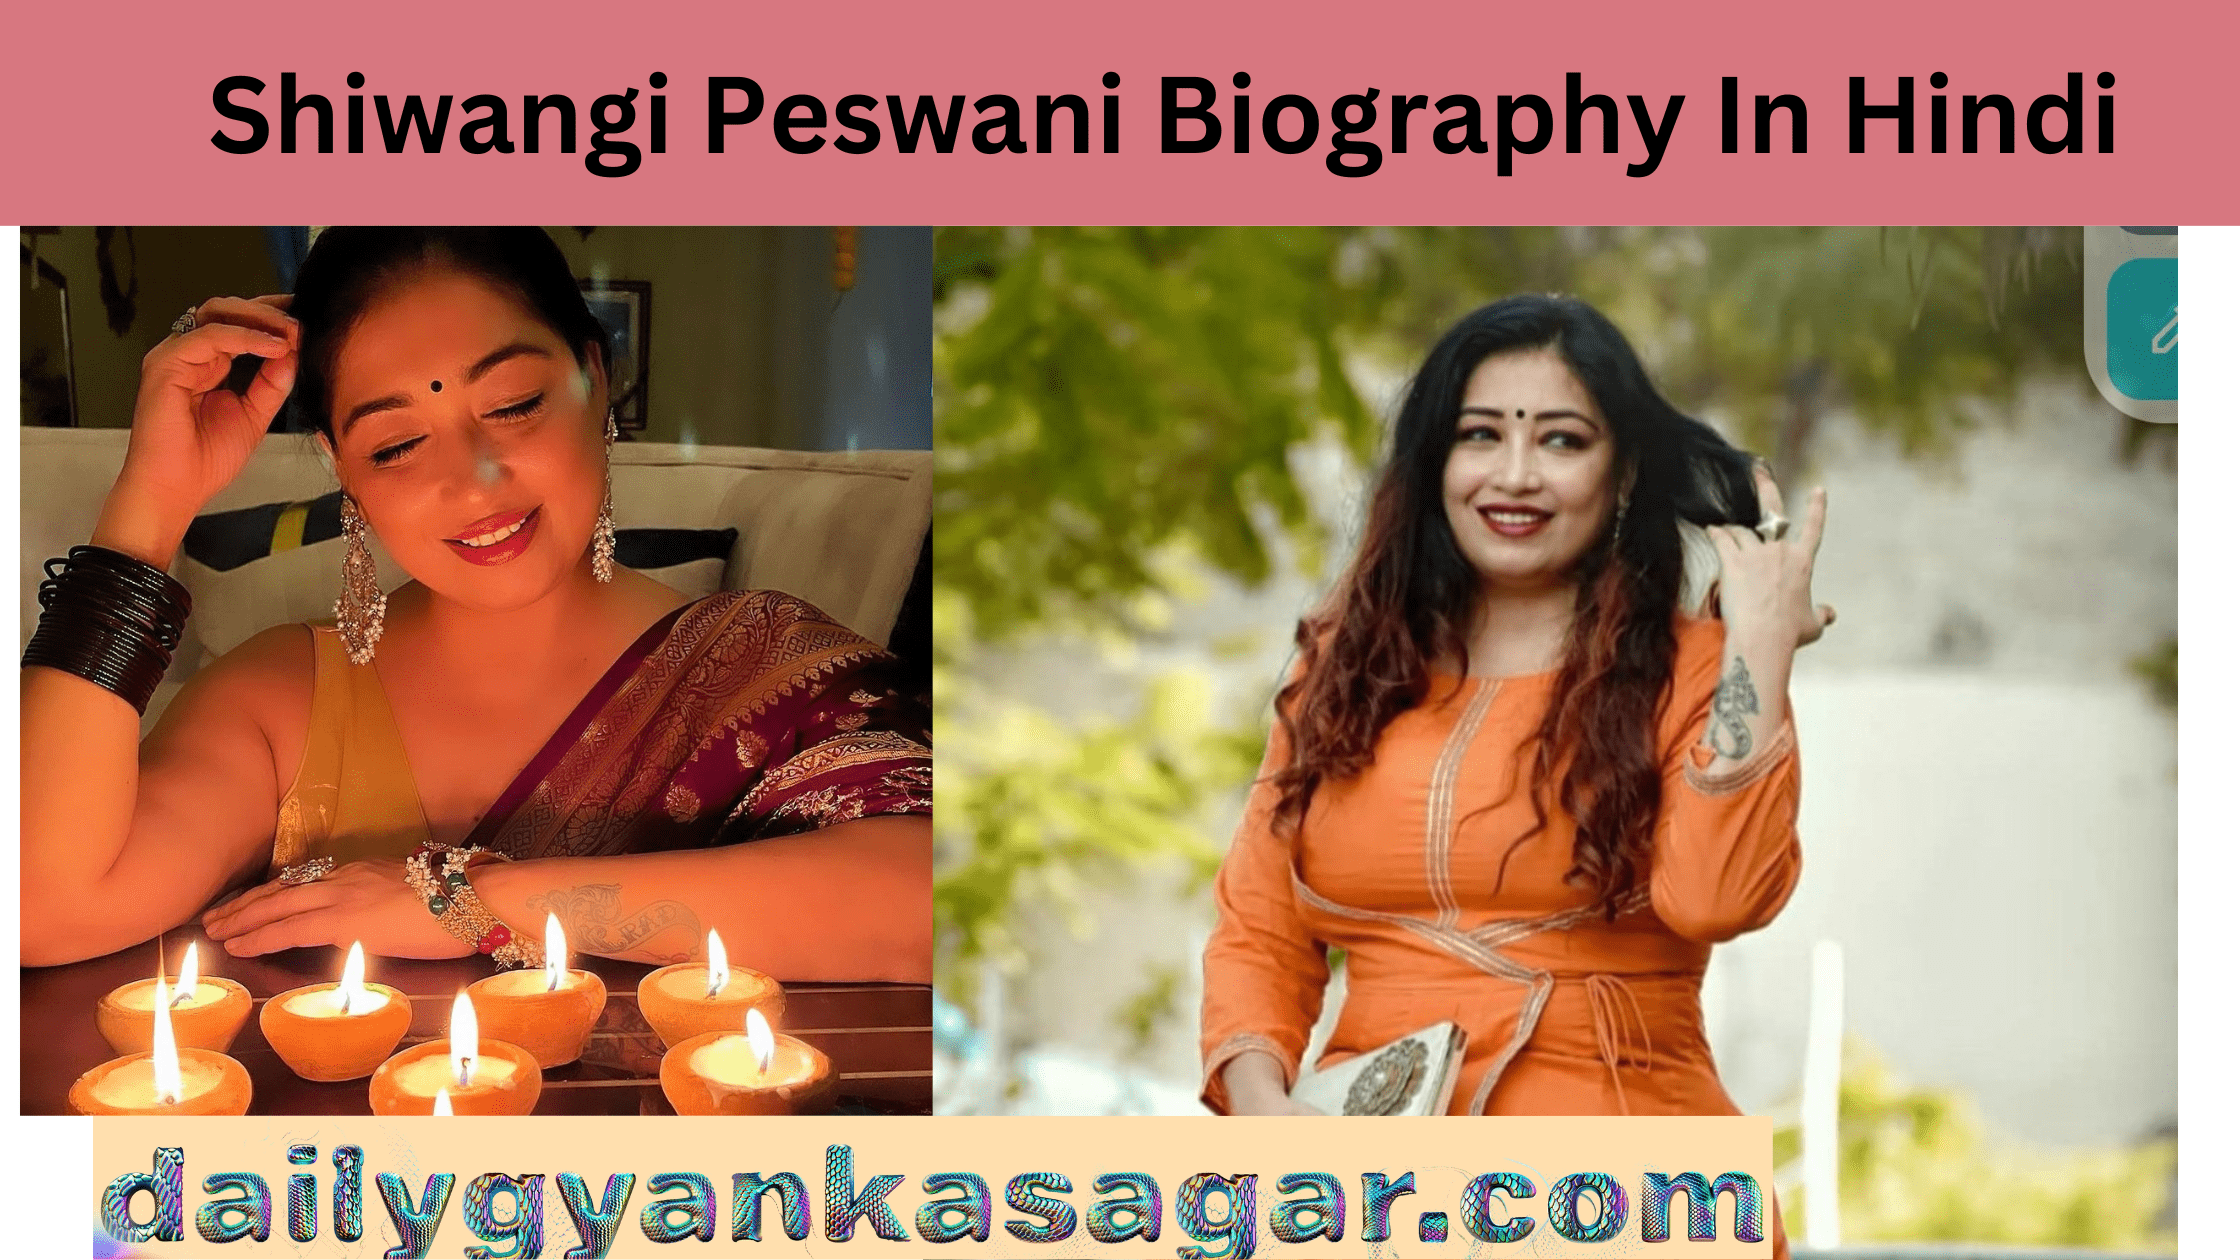 Shiwangi Peswani Biography In Hindi